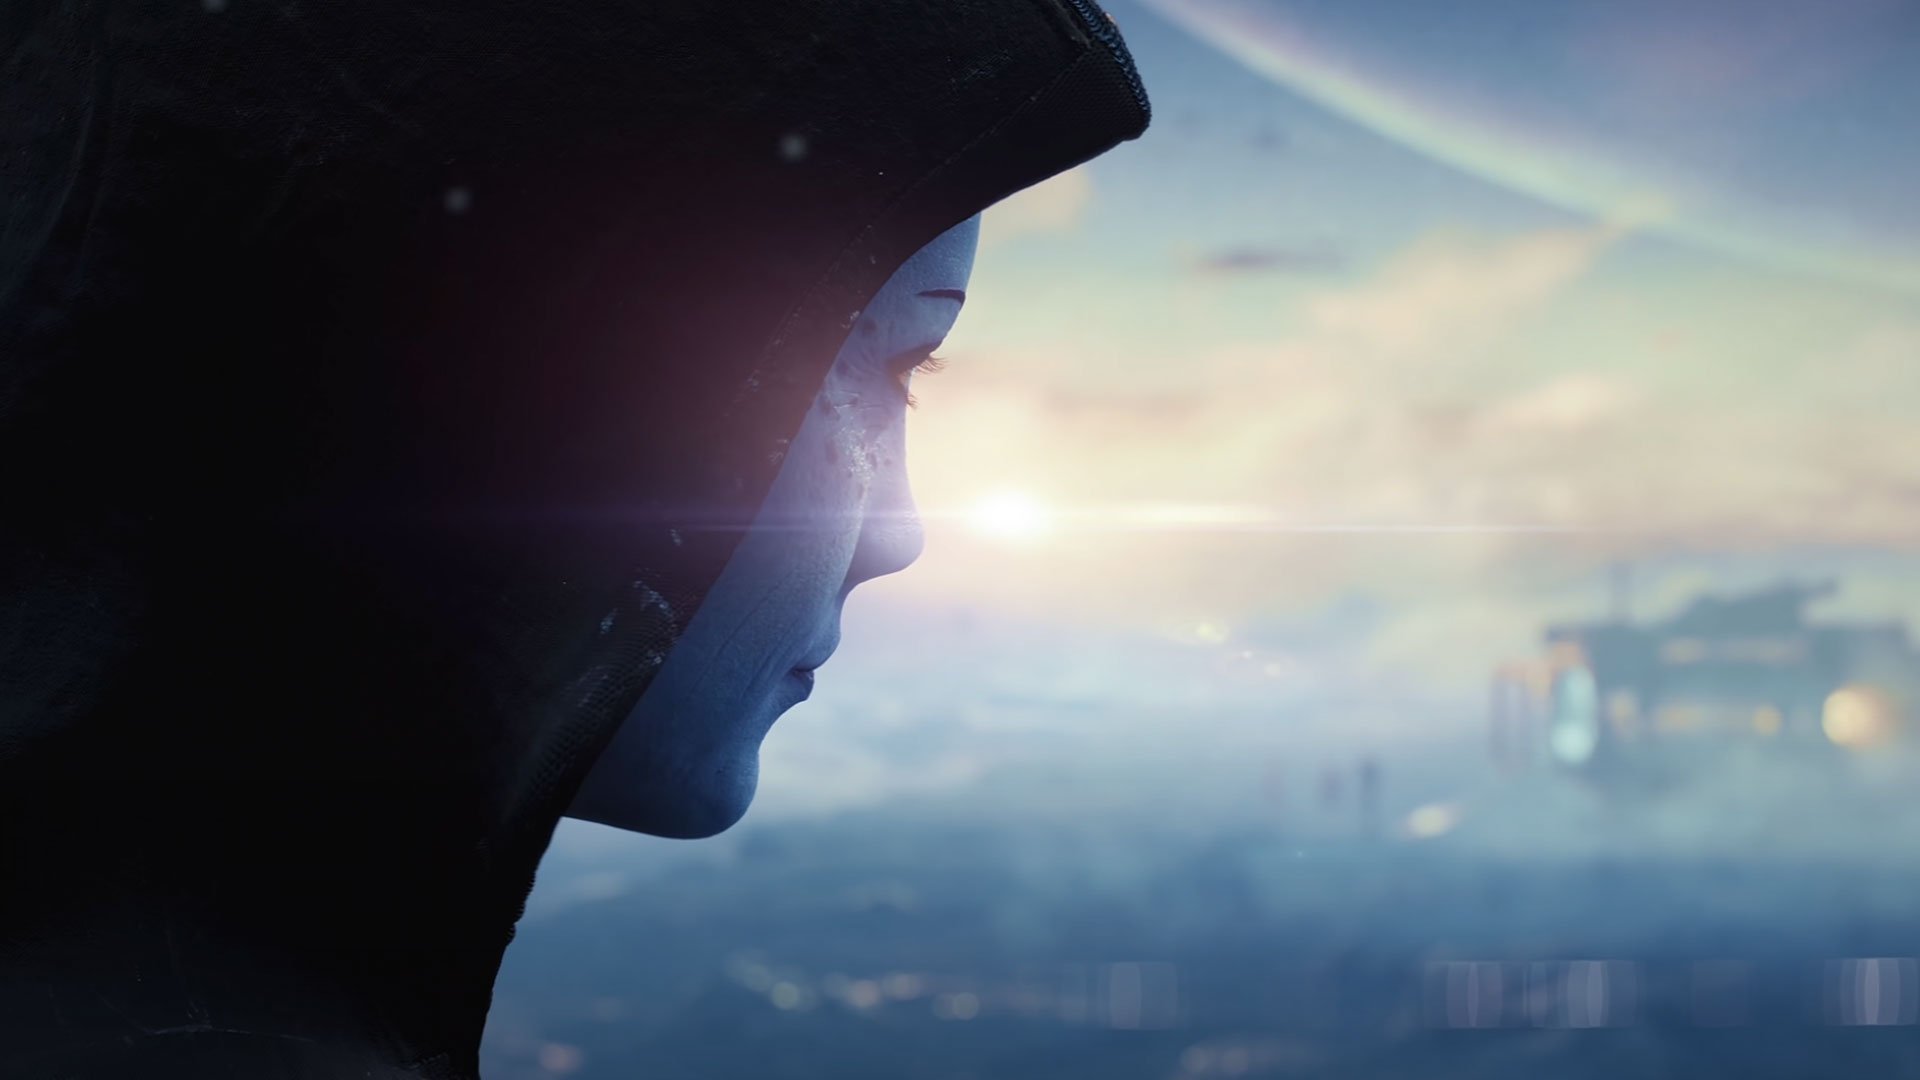 Lo que parece ser Liara aparece en el primer teaser del próximo juego de Mass Effect